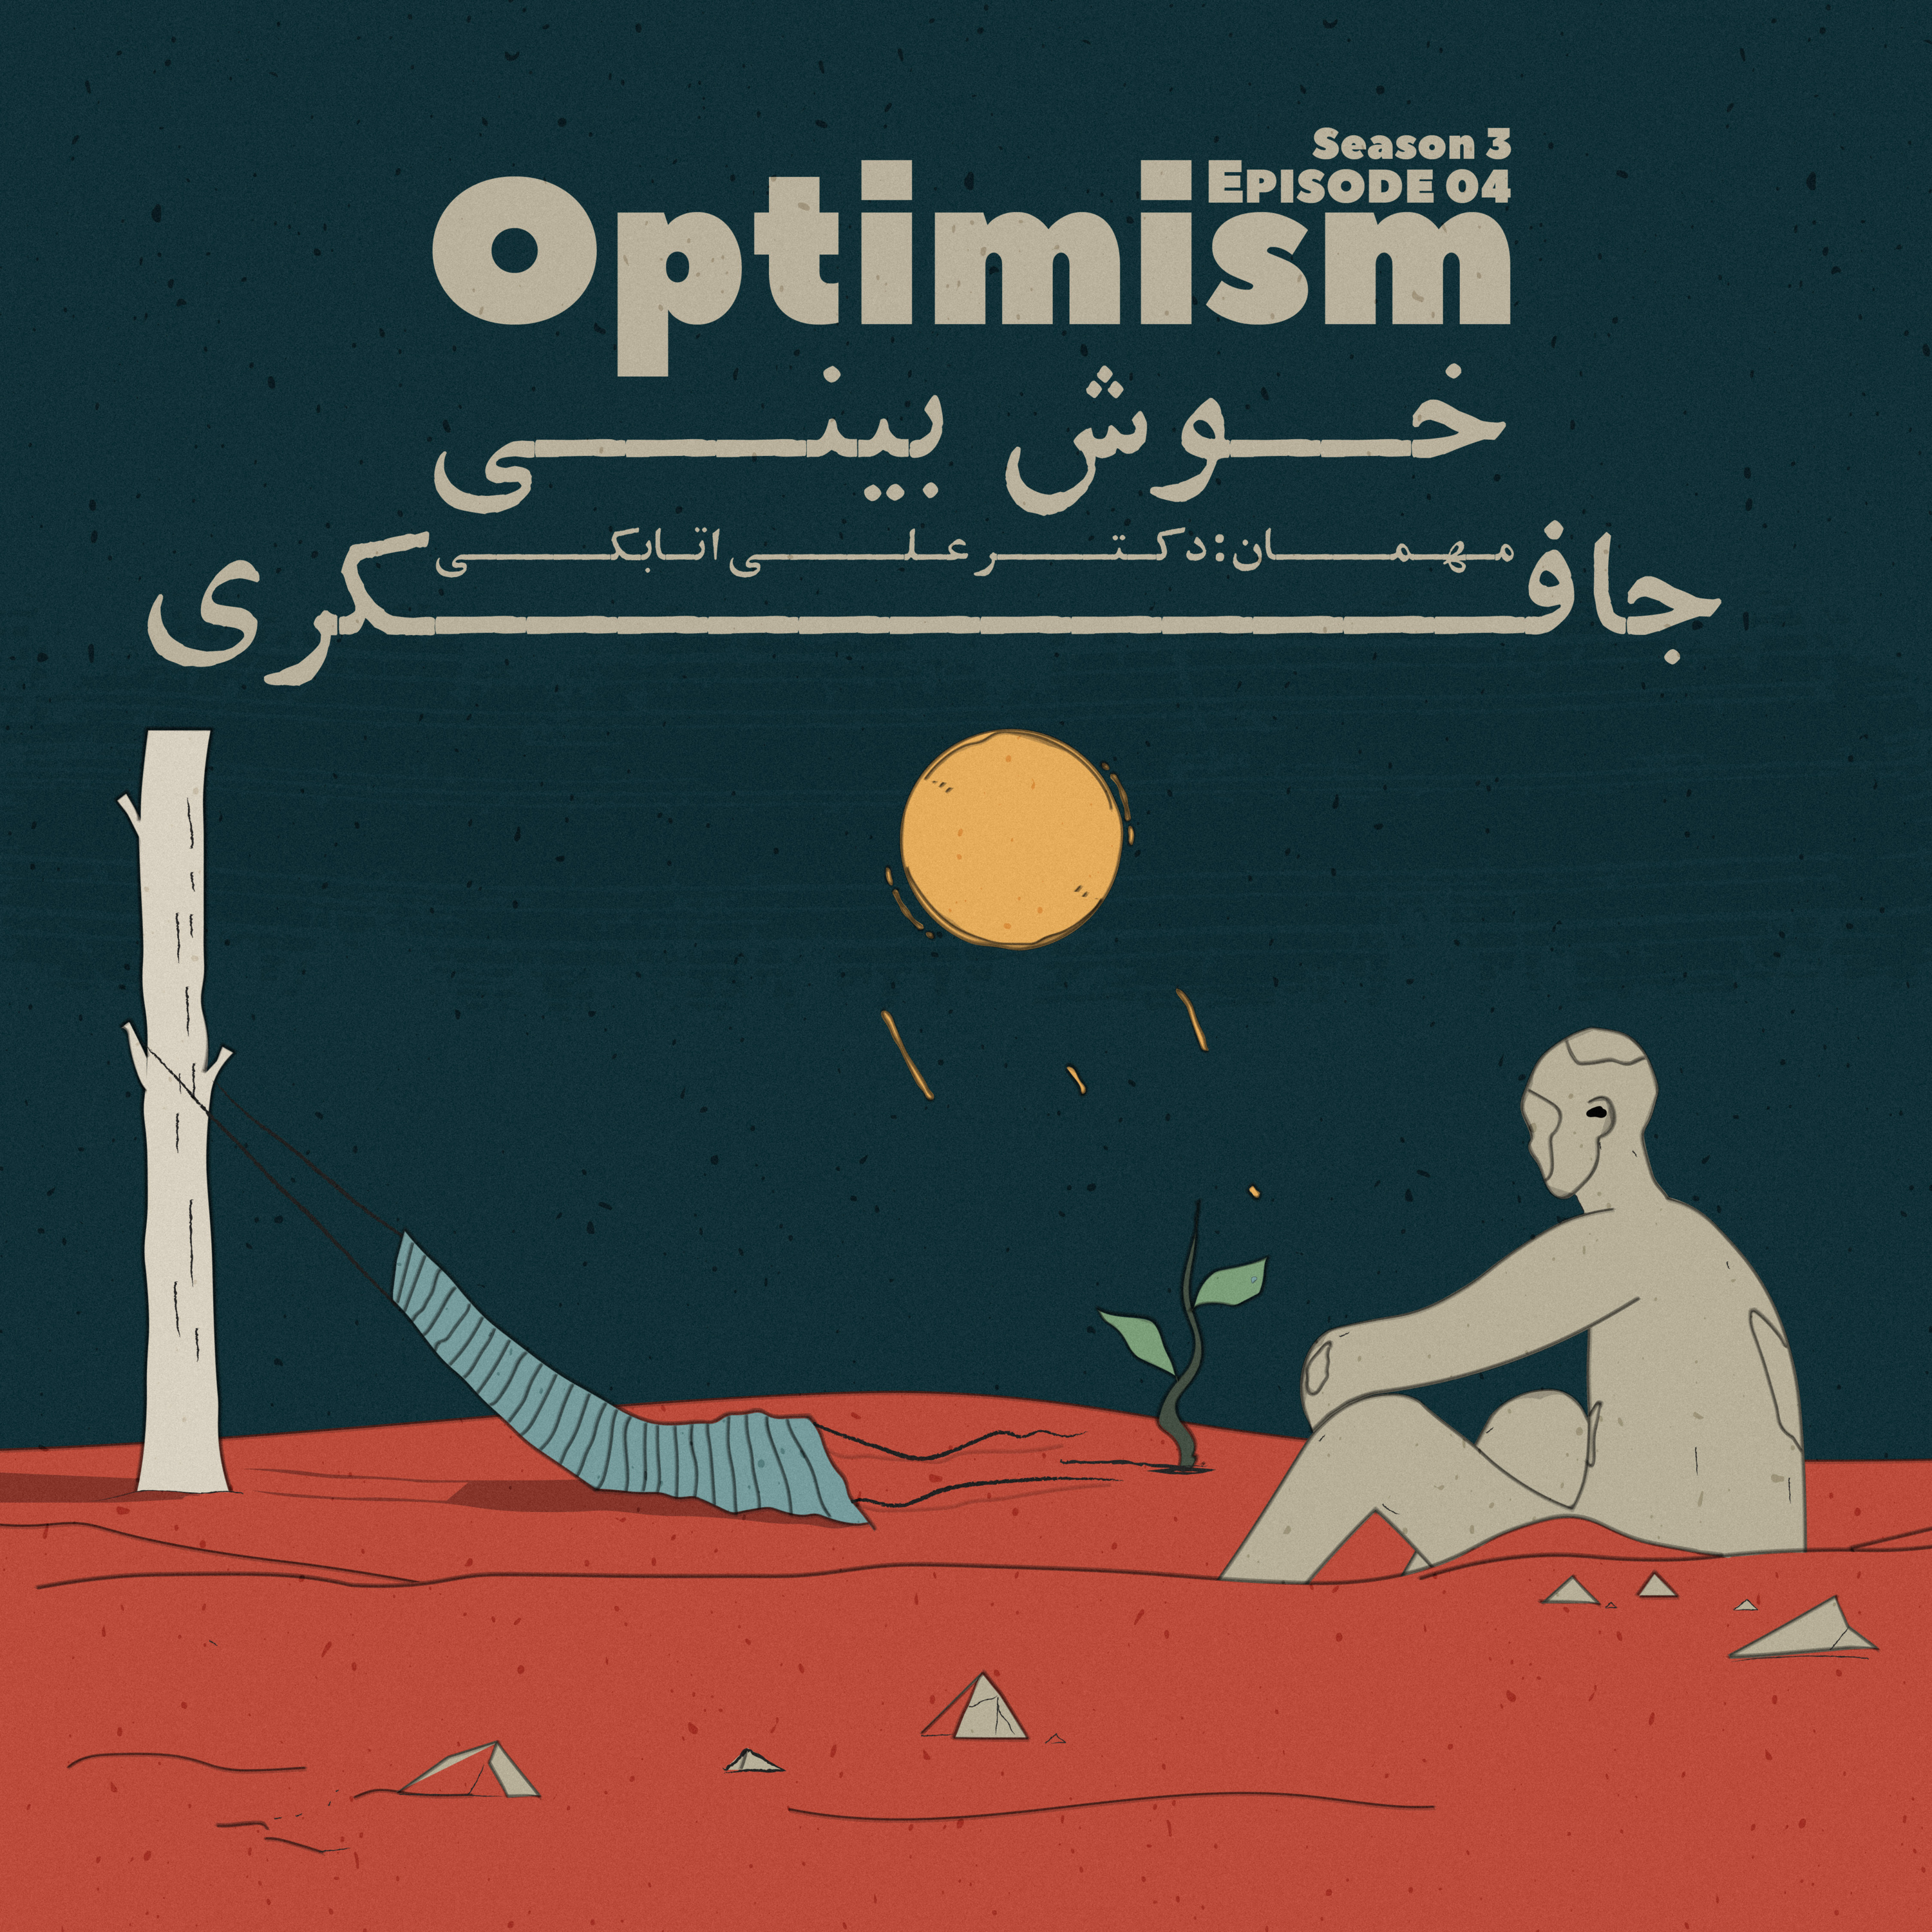 Episode 04 - Optimism (خوش بینی)